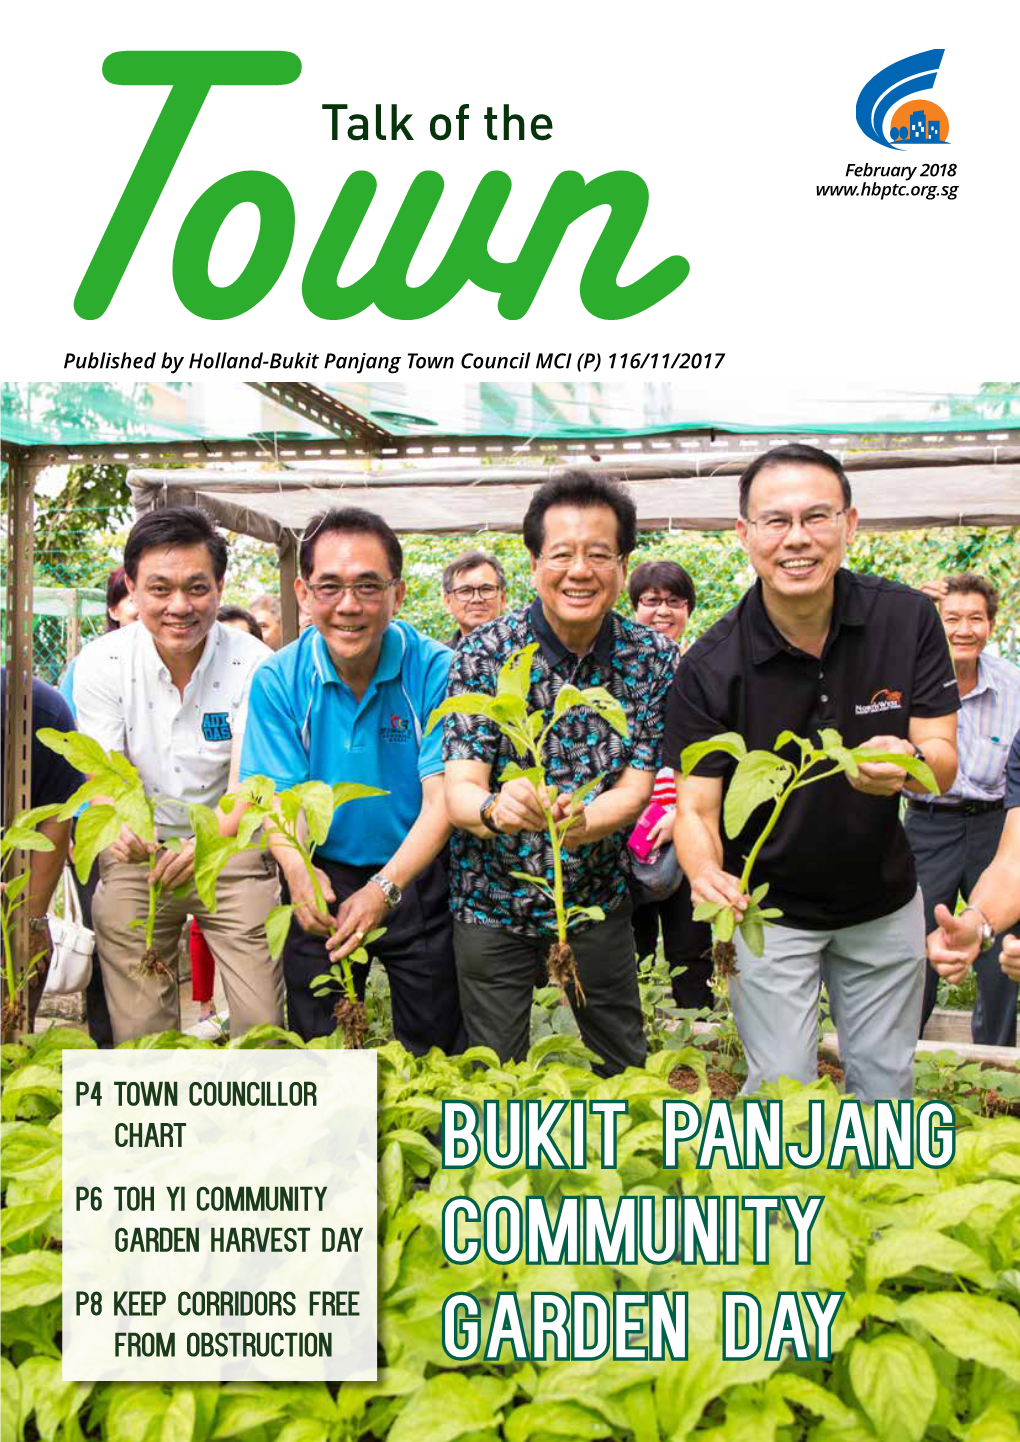 Bukit Panjang Community Garden Day